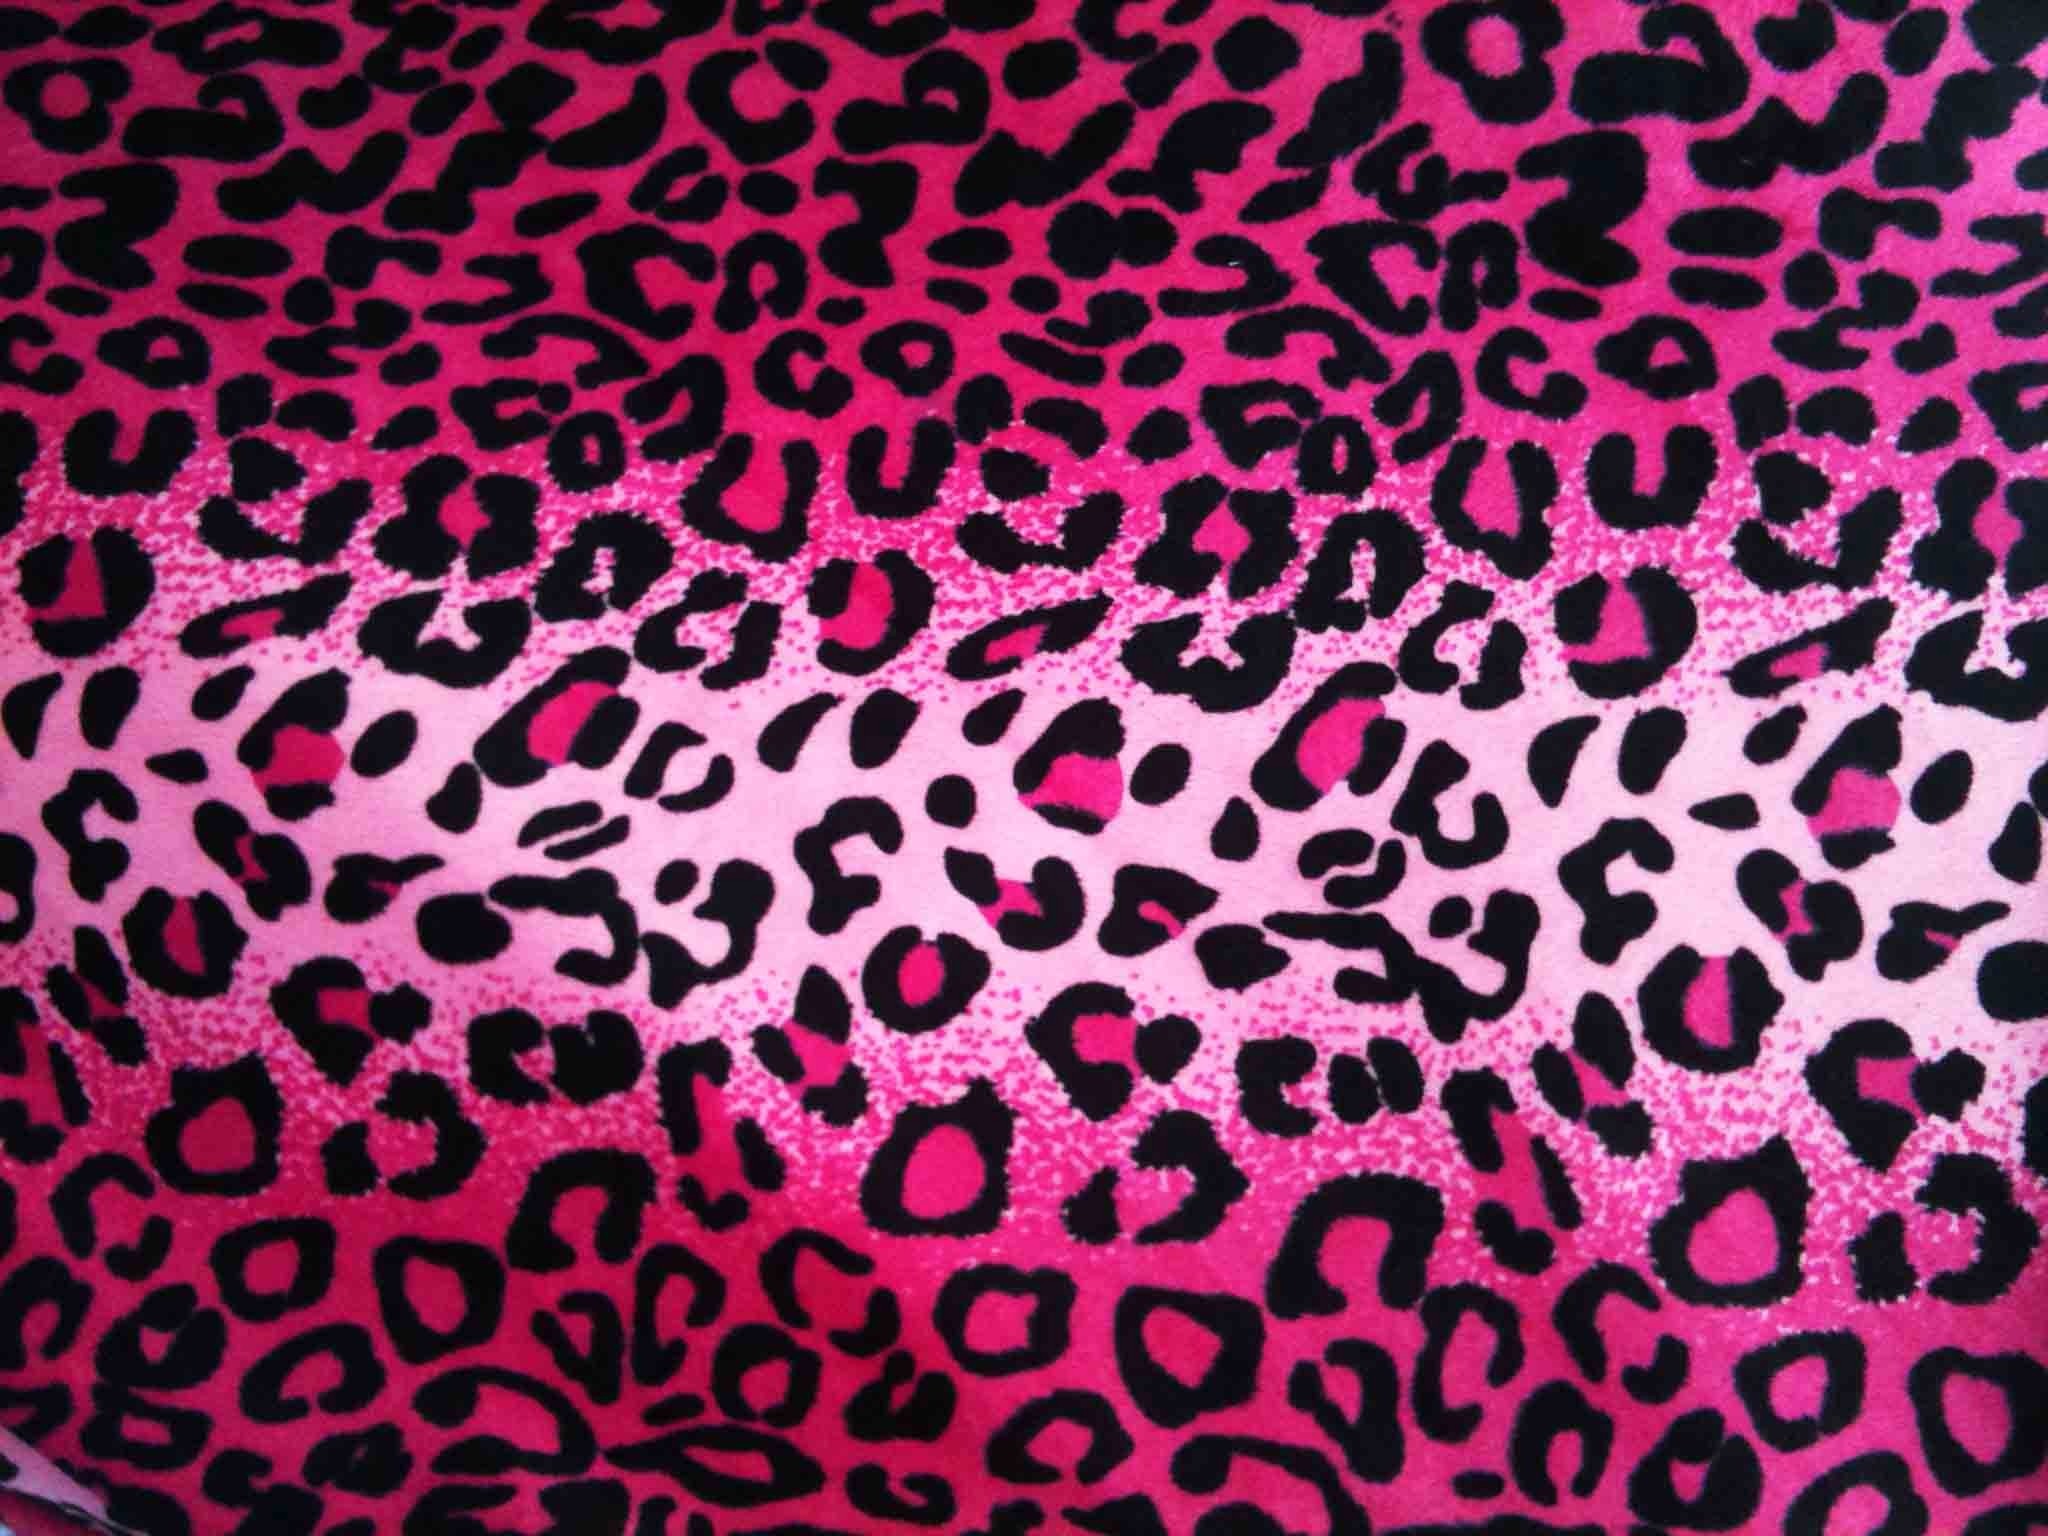 2048x1536 wallpaper, Pink Cheetah Backgrounds hd wallpaper, background desktop .